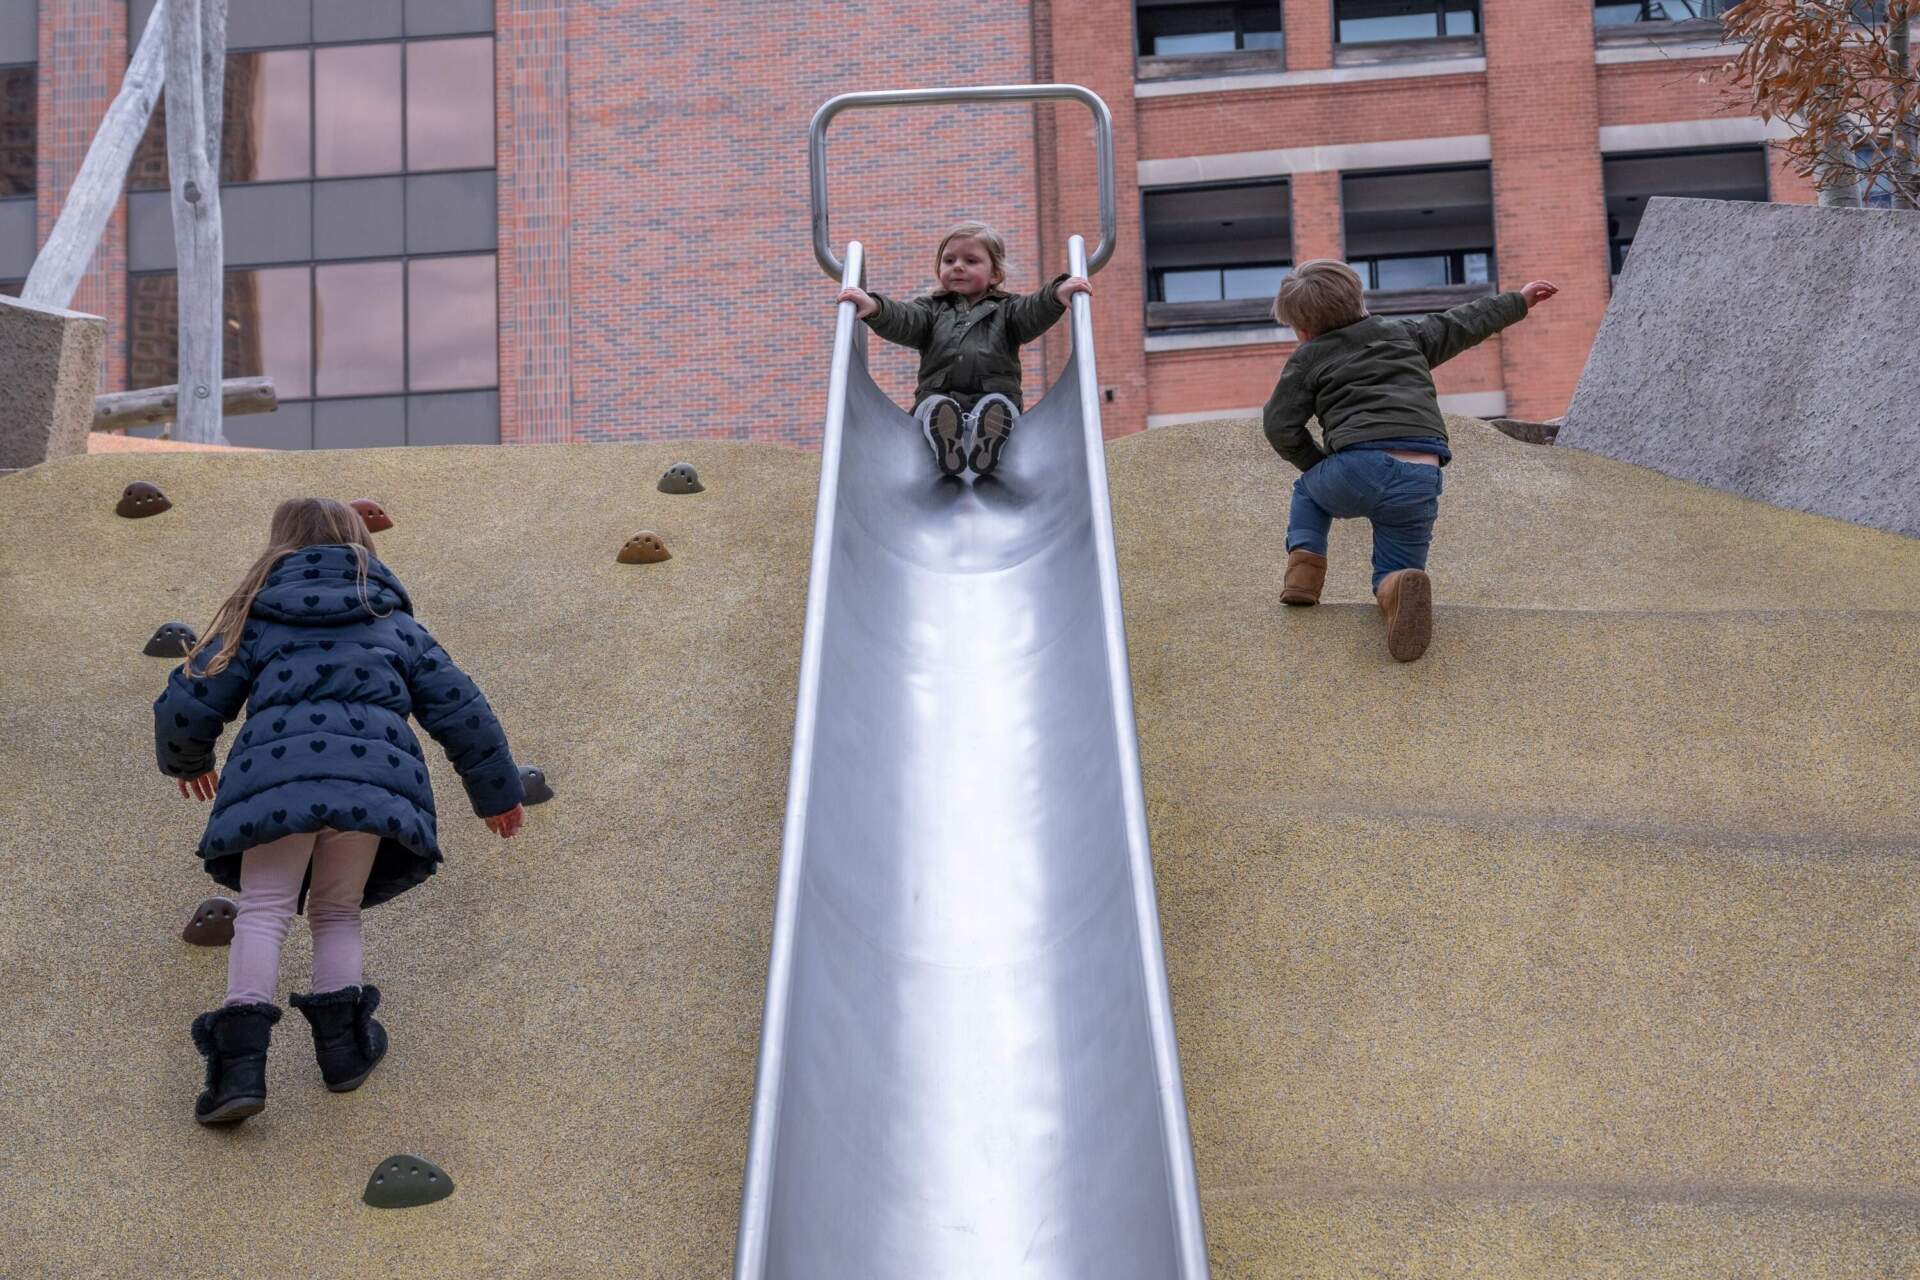 Children enjoying one of the slides in Martin's Park. (Sharon Brody/WBUR)